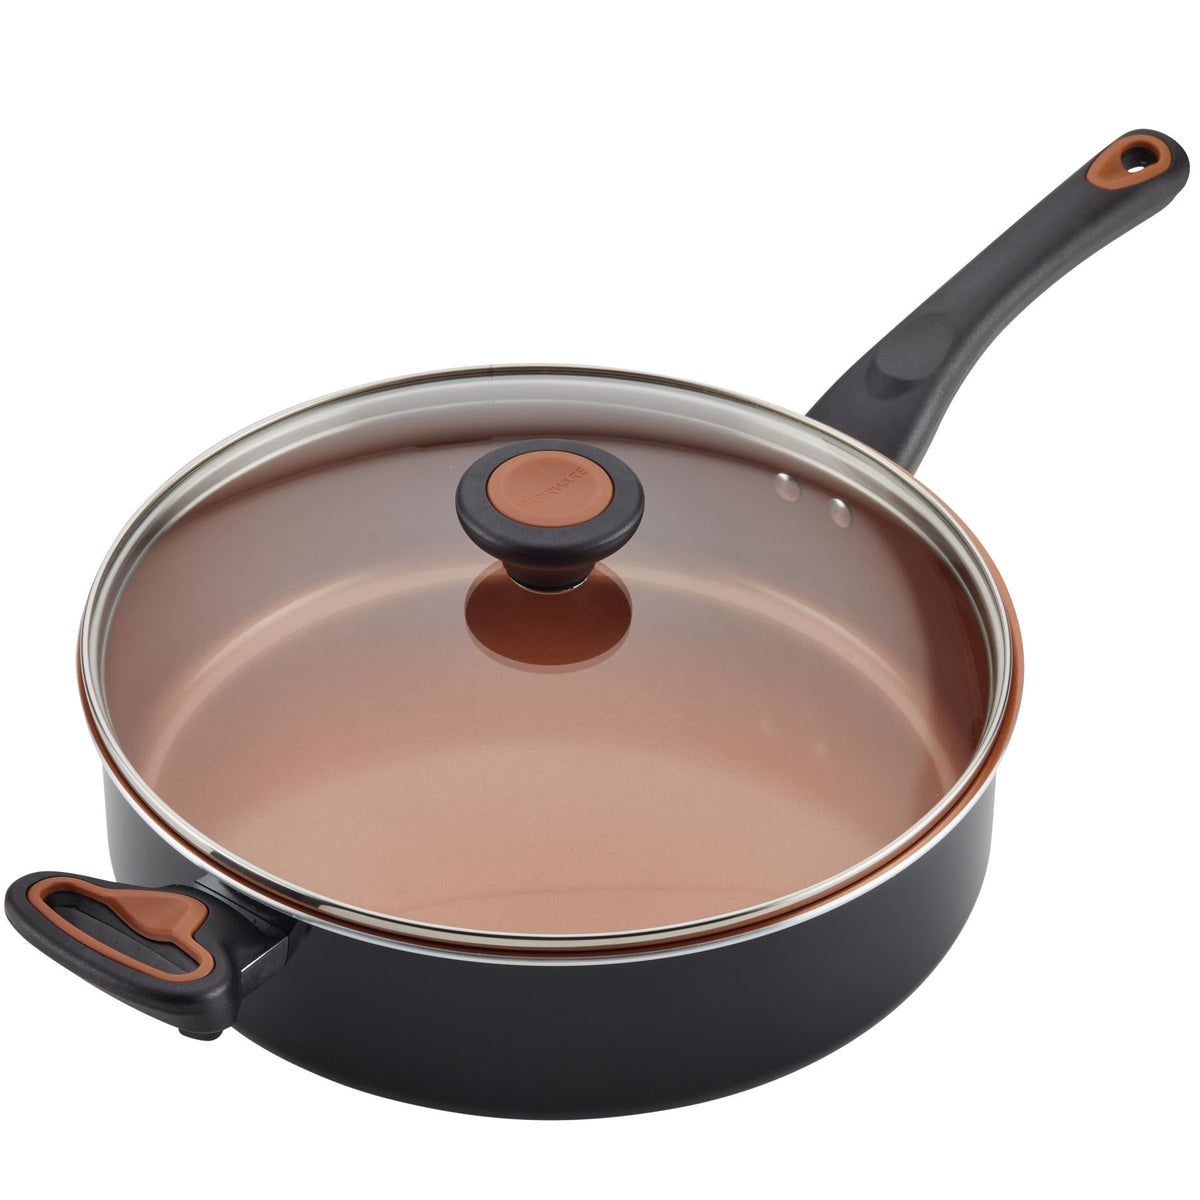 Farberware Classic Saute Pan / Frying Pan / Fry Pan with Lid and Helper  Handle - 4.5 Quart, Silver, 50012